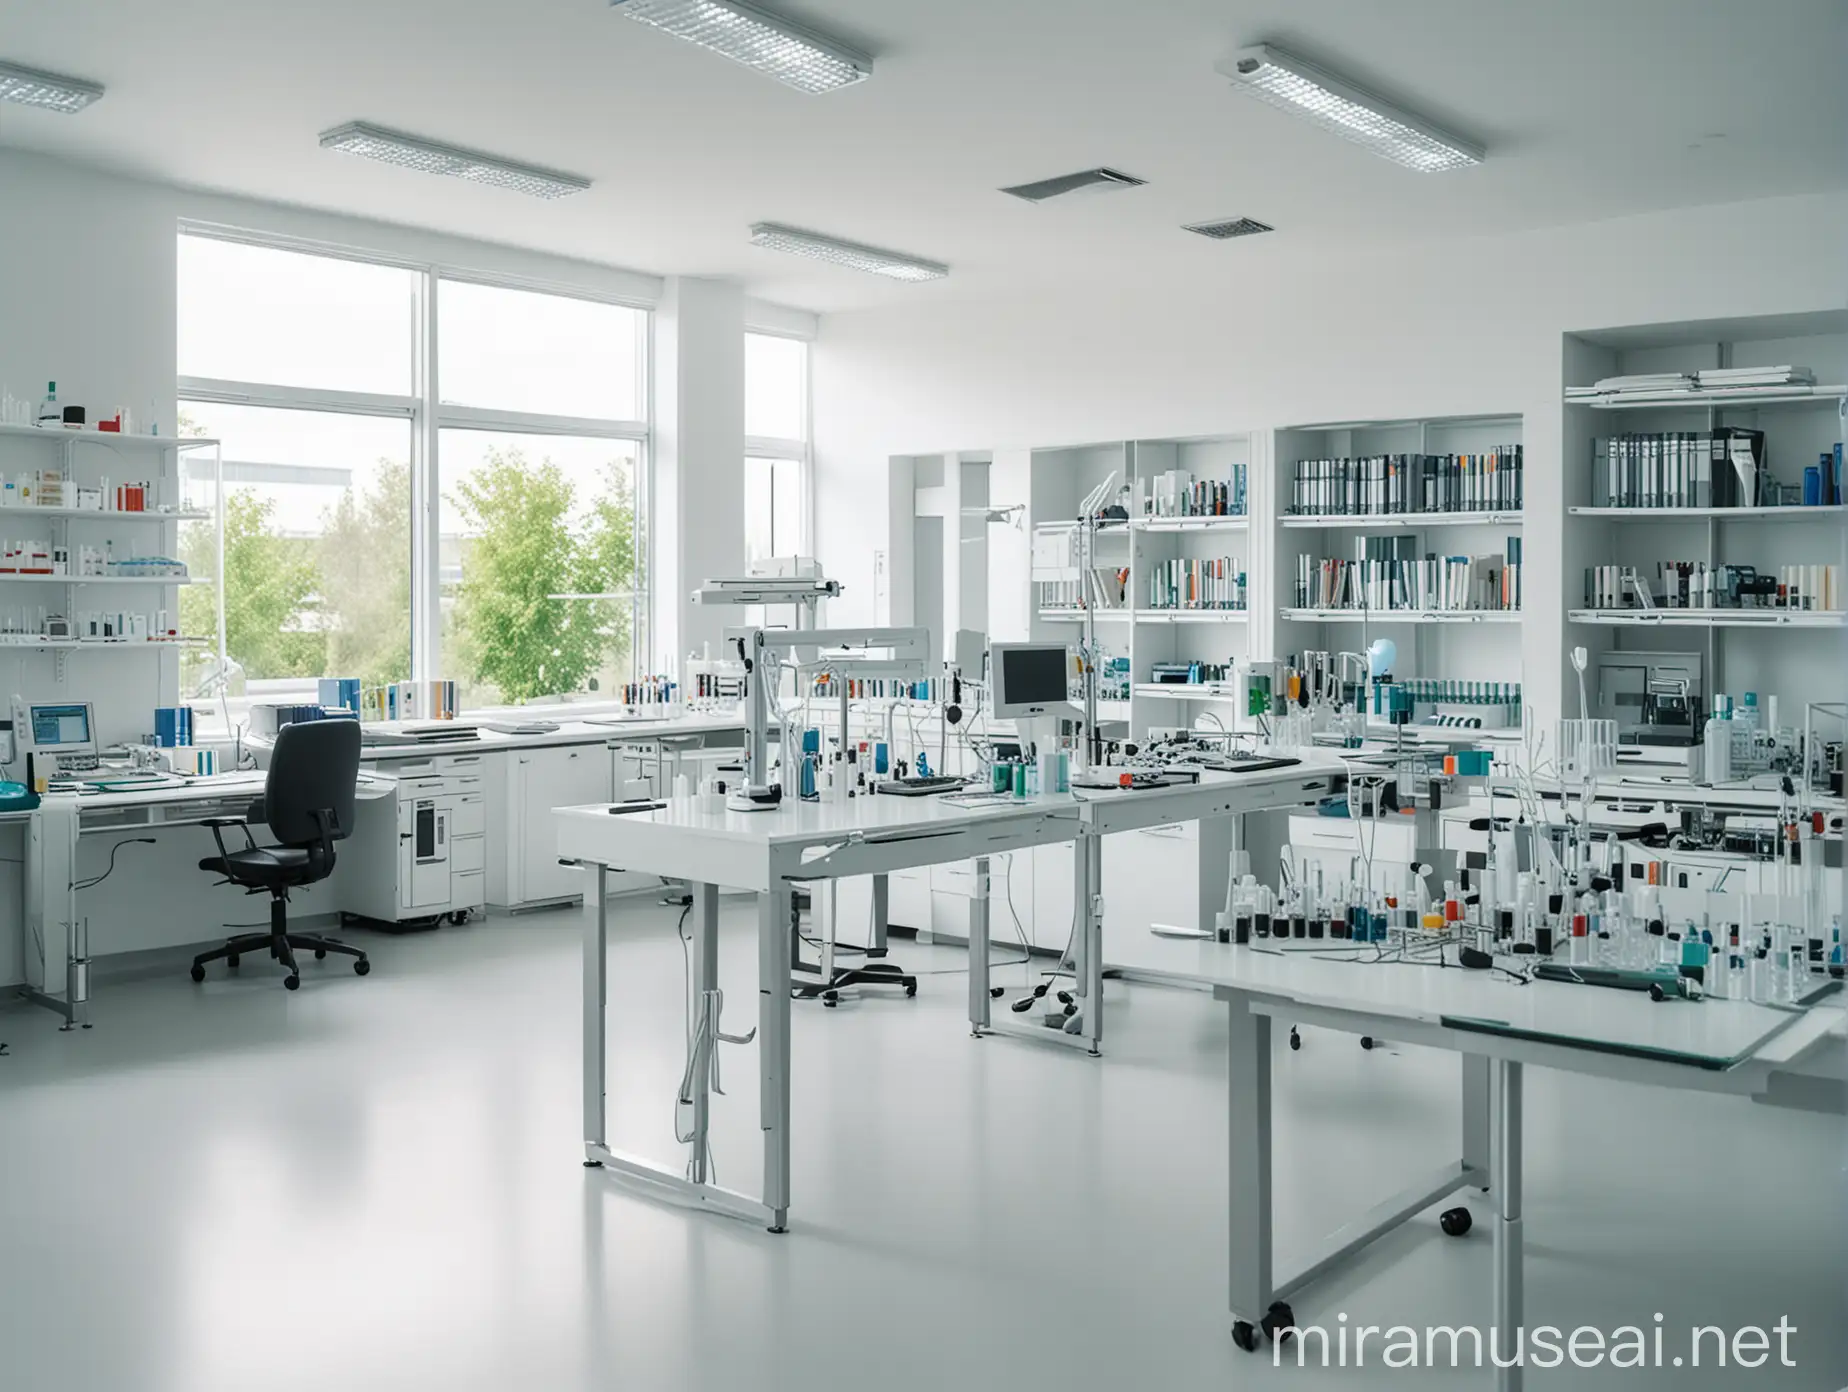 有纵深感的生物实验室场景，医学实验室，制药实验室，明亮的室内环境，整齐的桌面，有几台仪器设备，